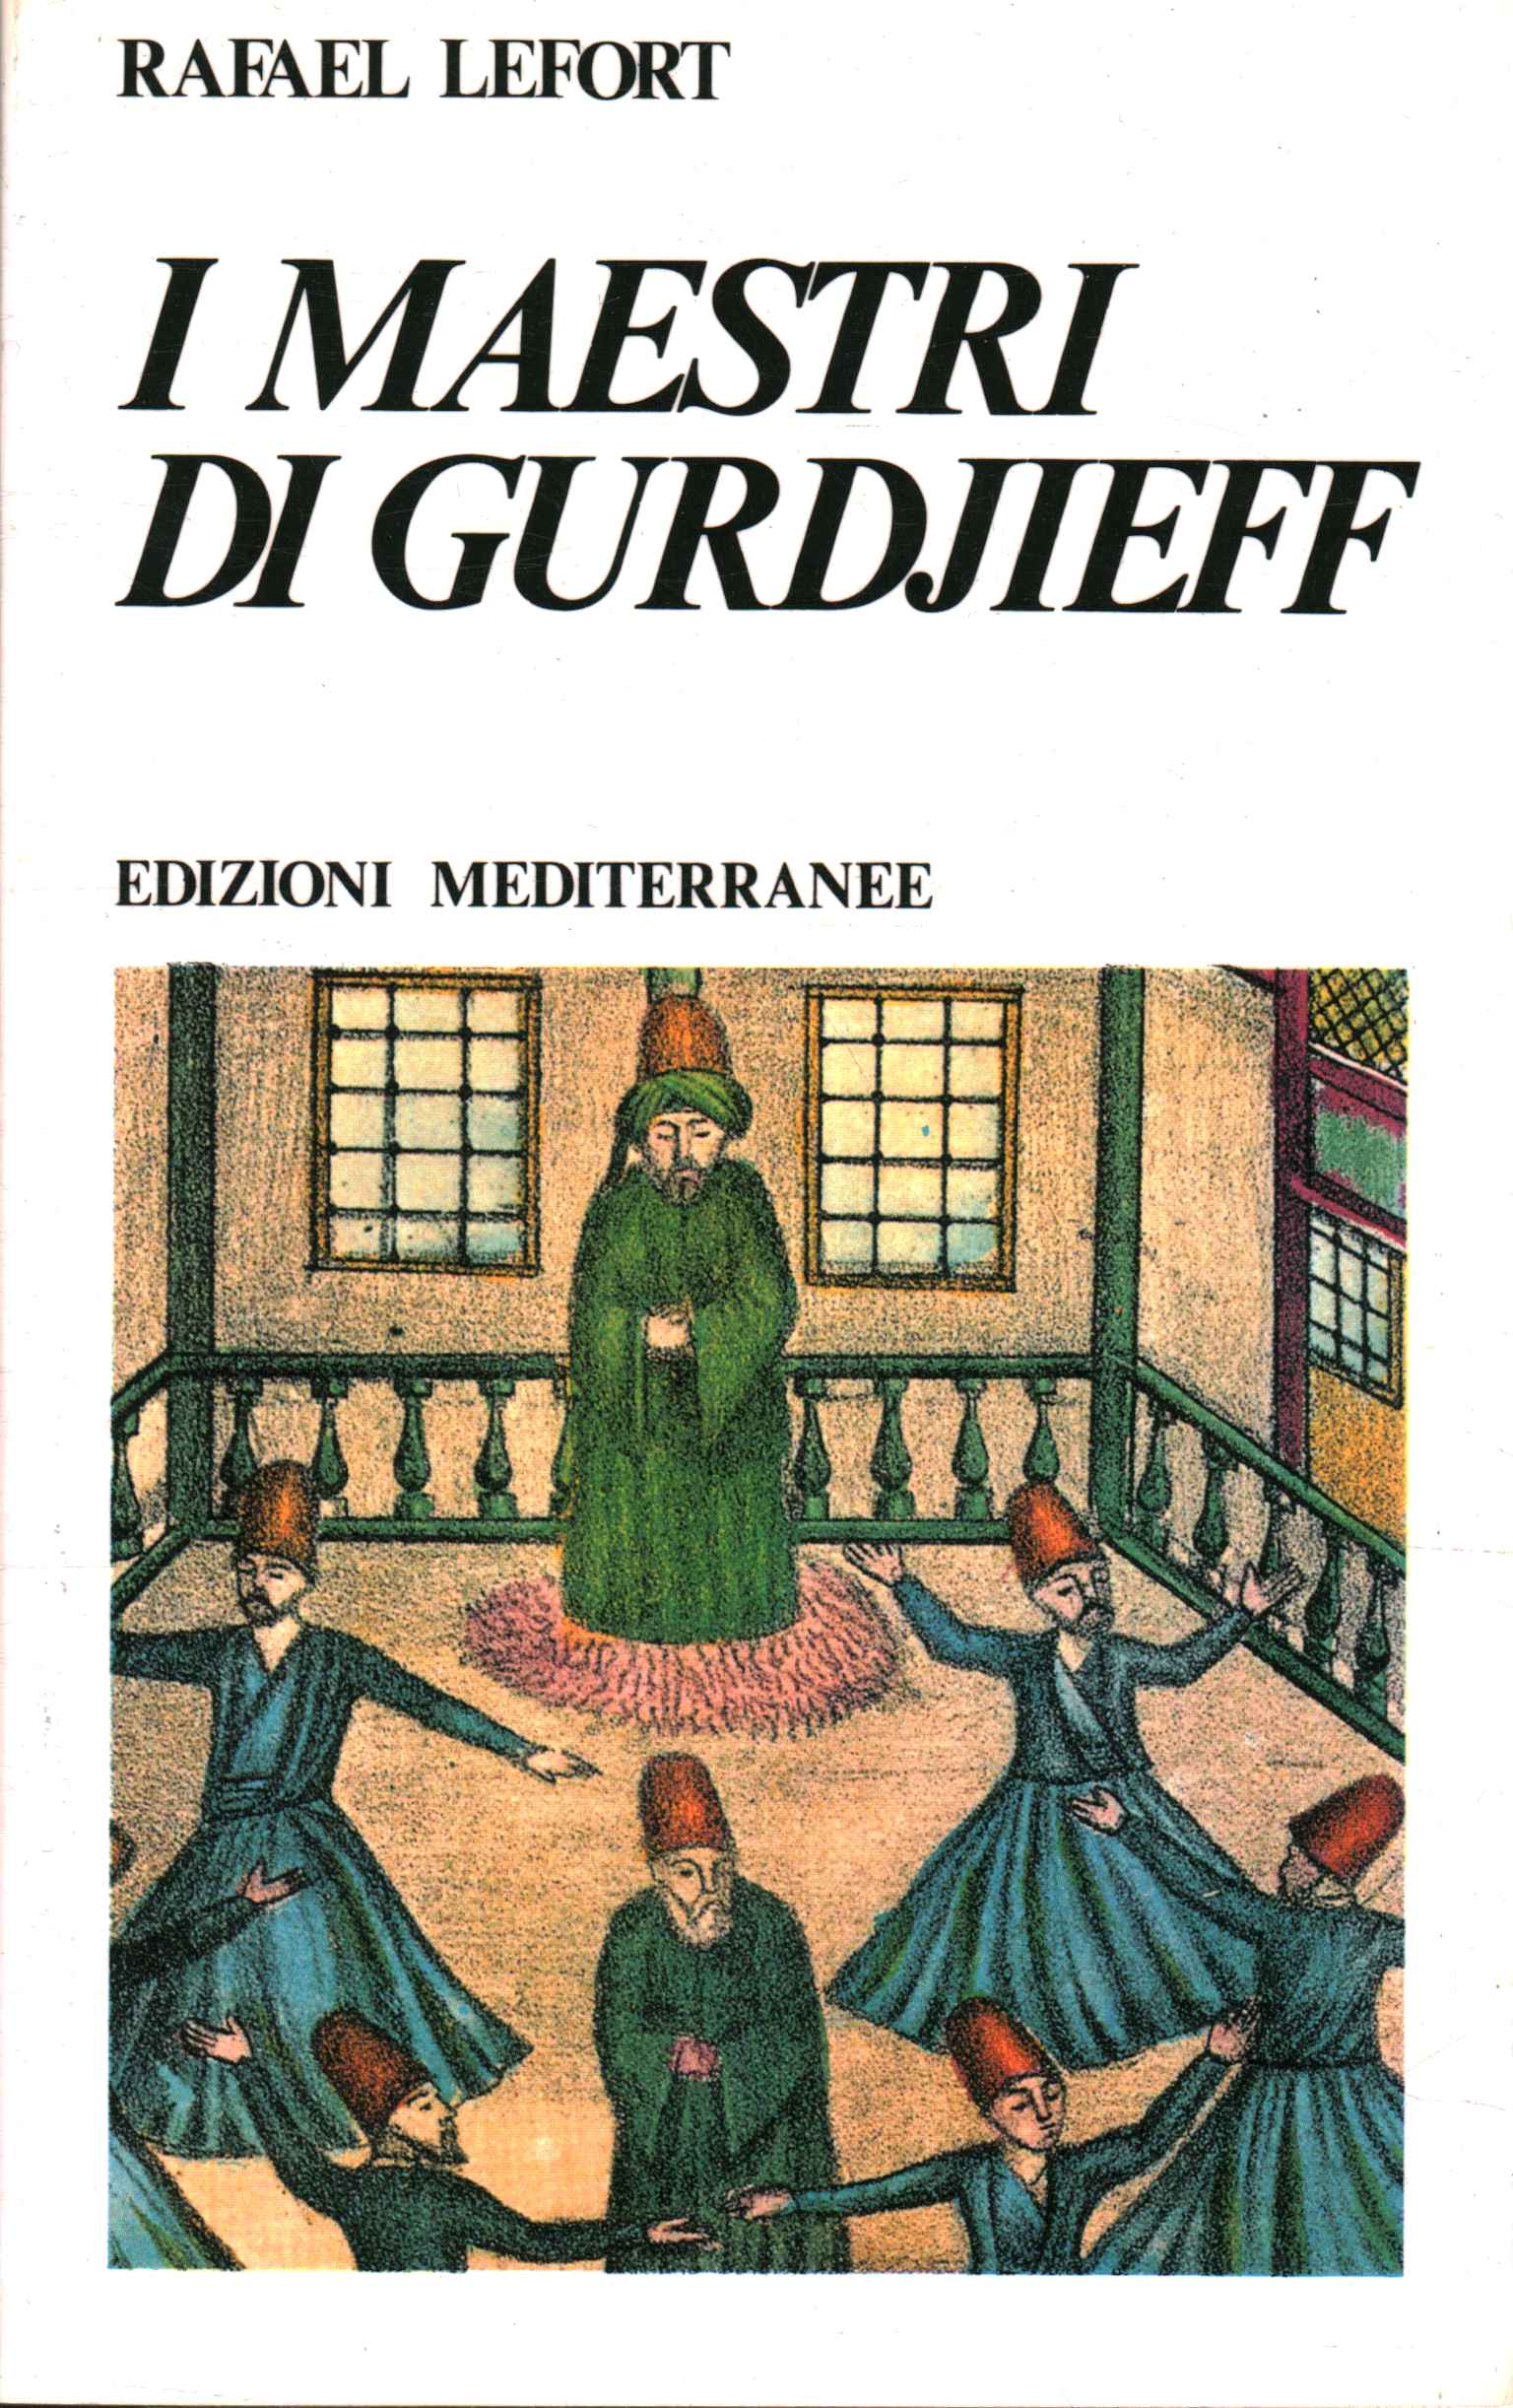 Les maîtres de Gurdjieff